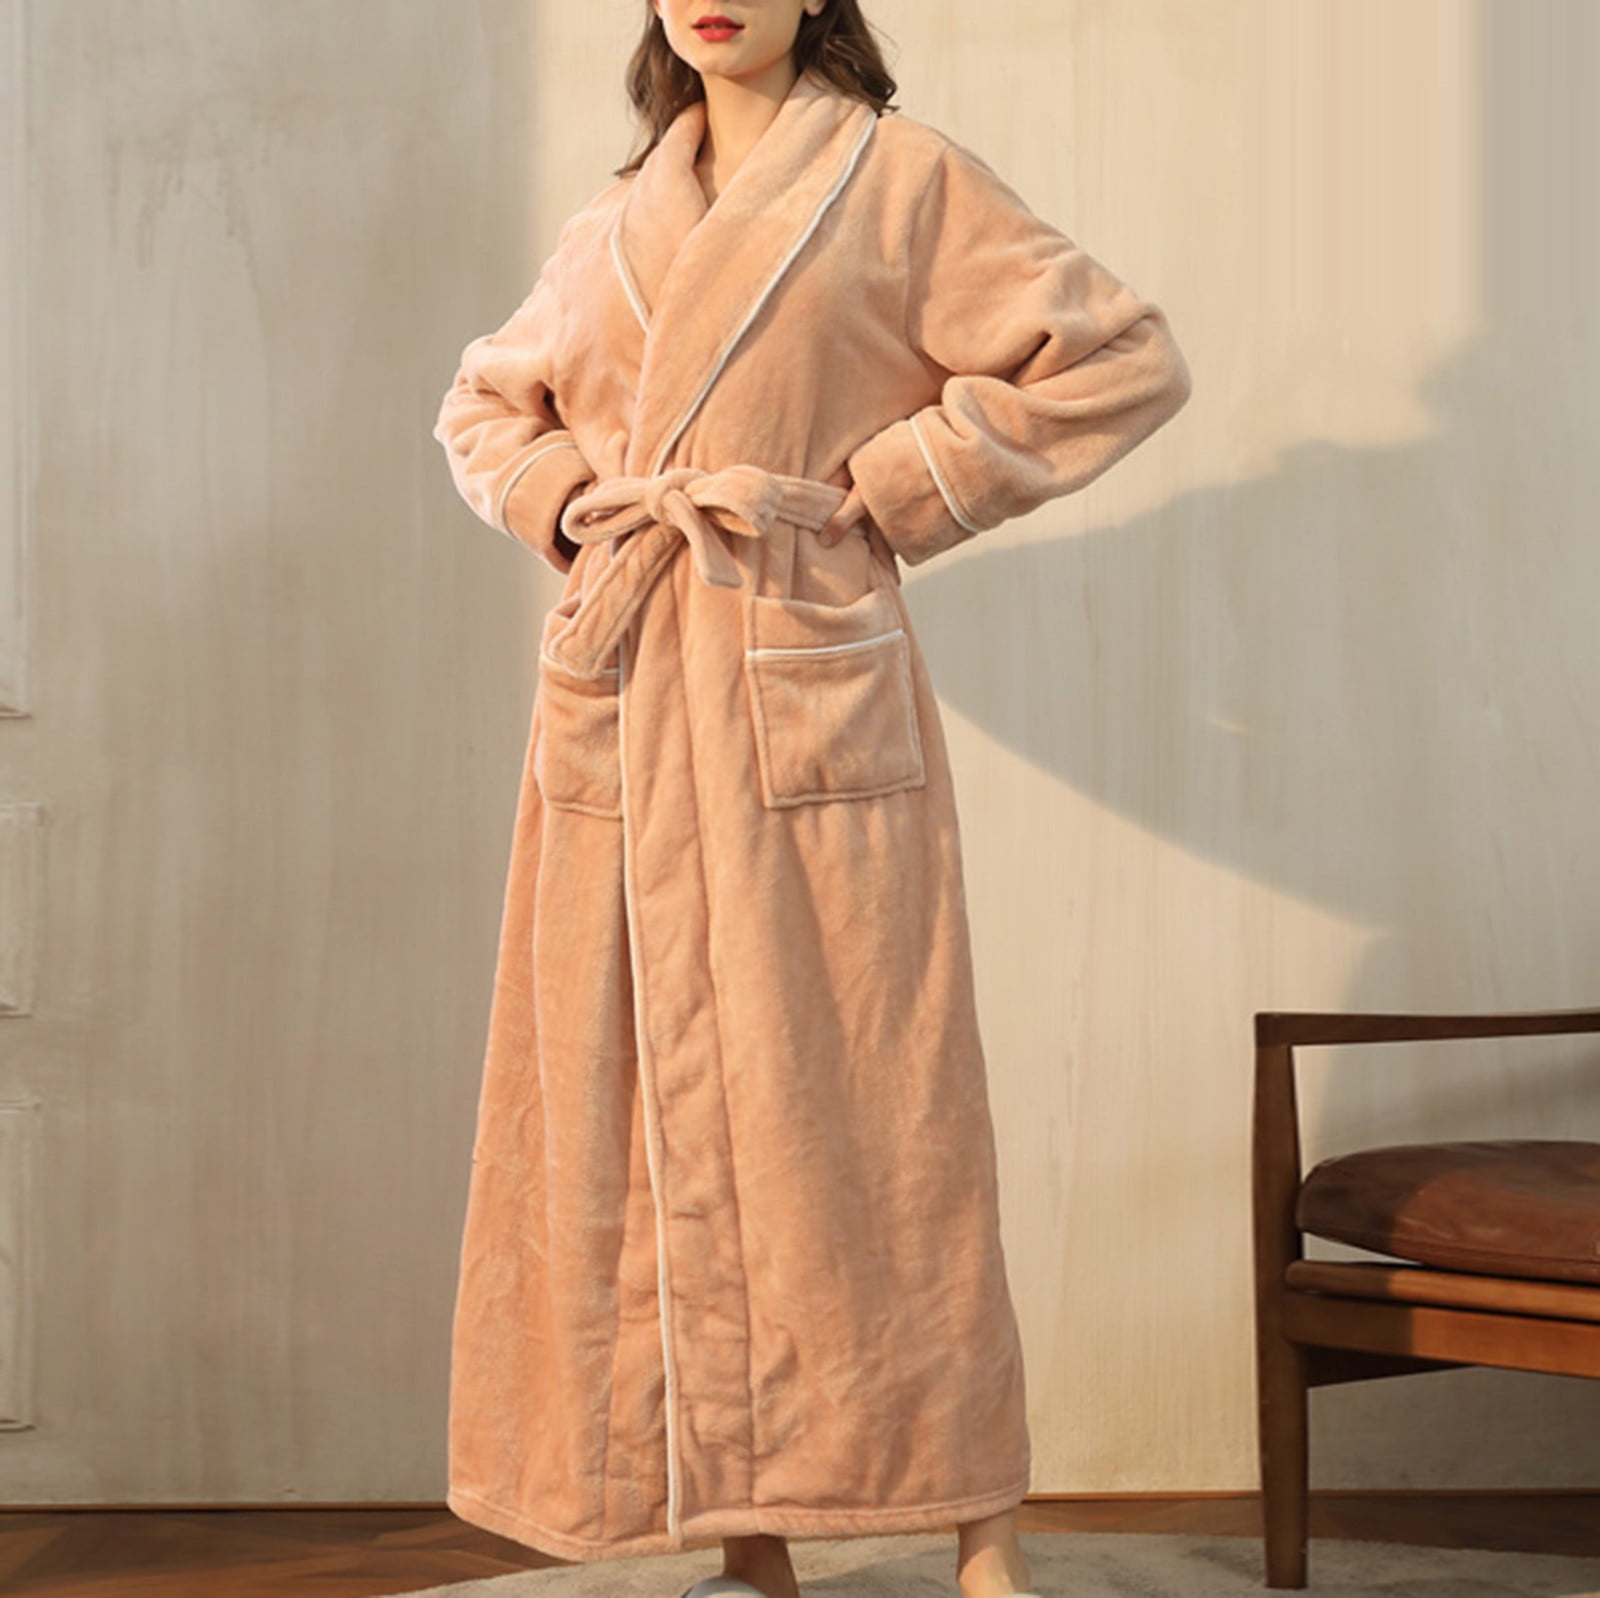 Women's Hooded Robe - Daylight